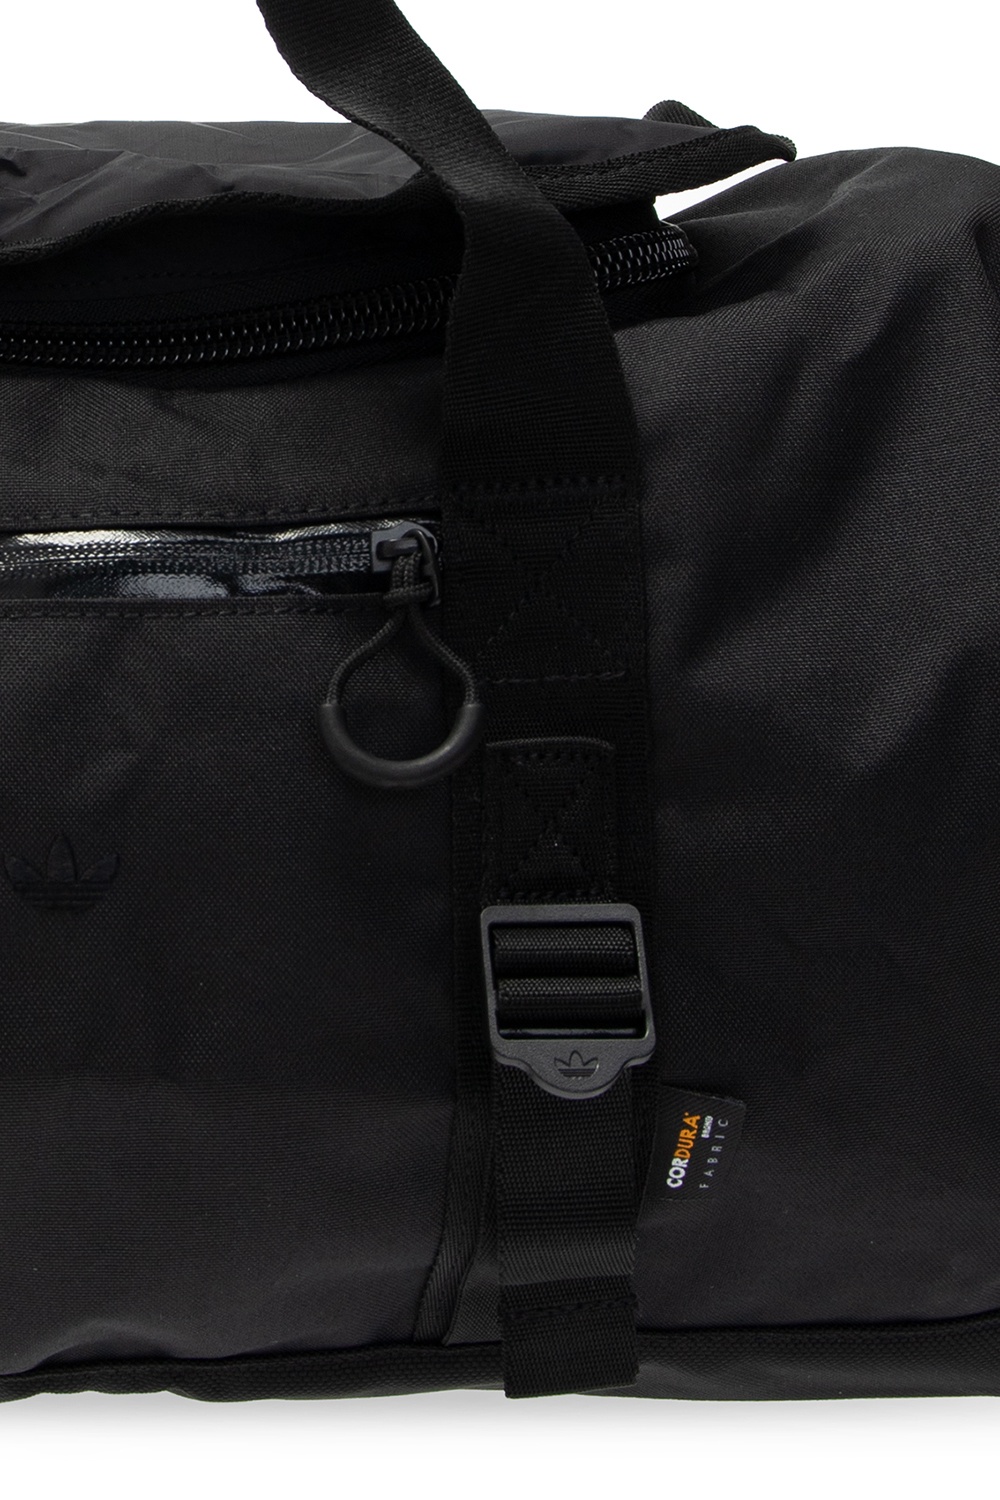 Convertible Bag With Logo Adidas Originals Gov Us - bag roblox adidas bag